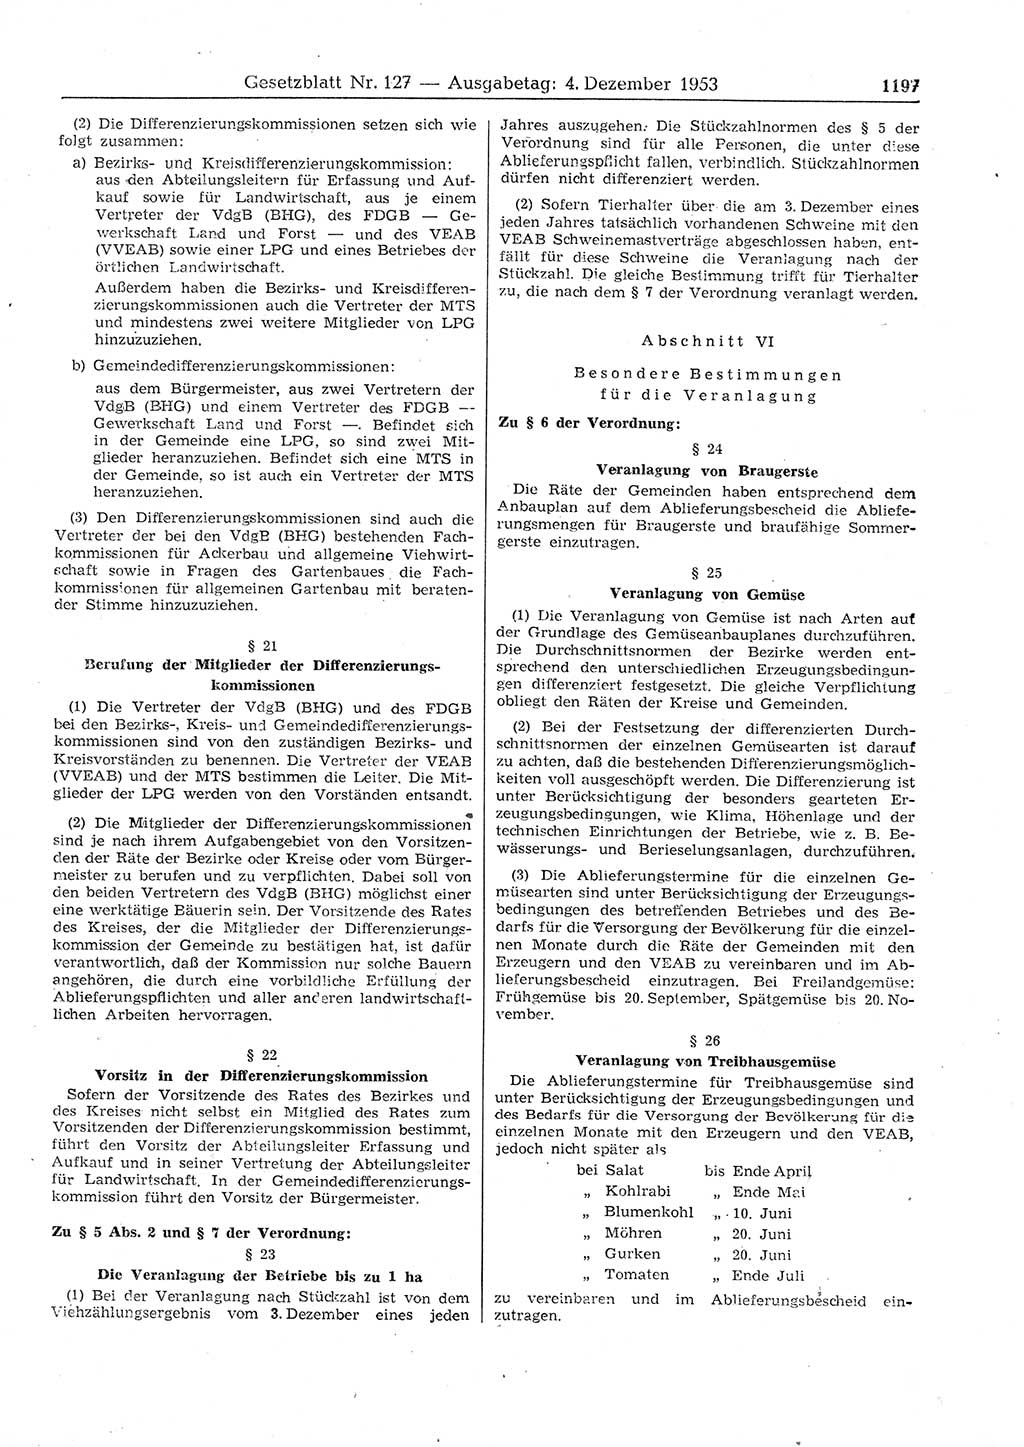 Gesetzblatt (GBl.) der Deutschen Demokratischen Republik (DDR) 1953, Seite 1197 (GBl. DDR 1953, S. 1197)